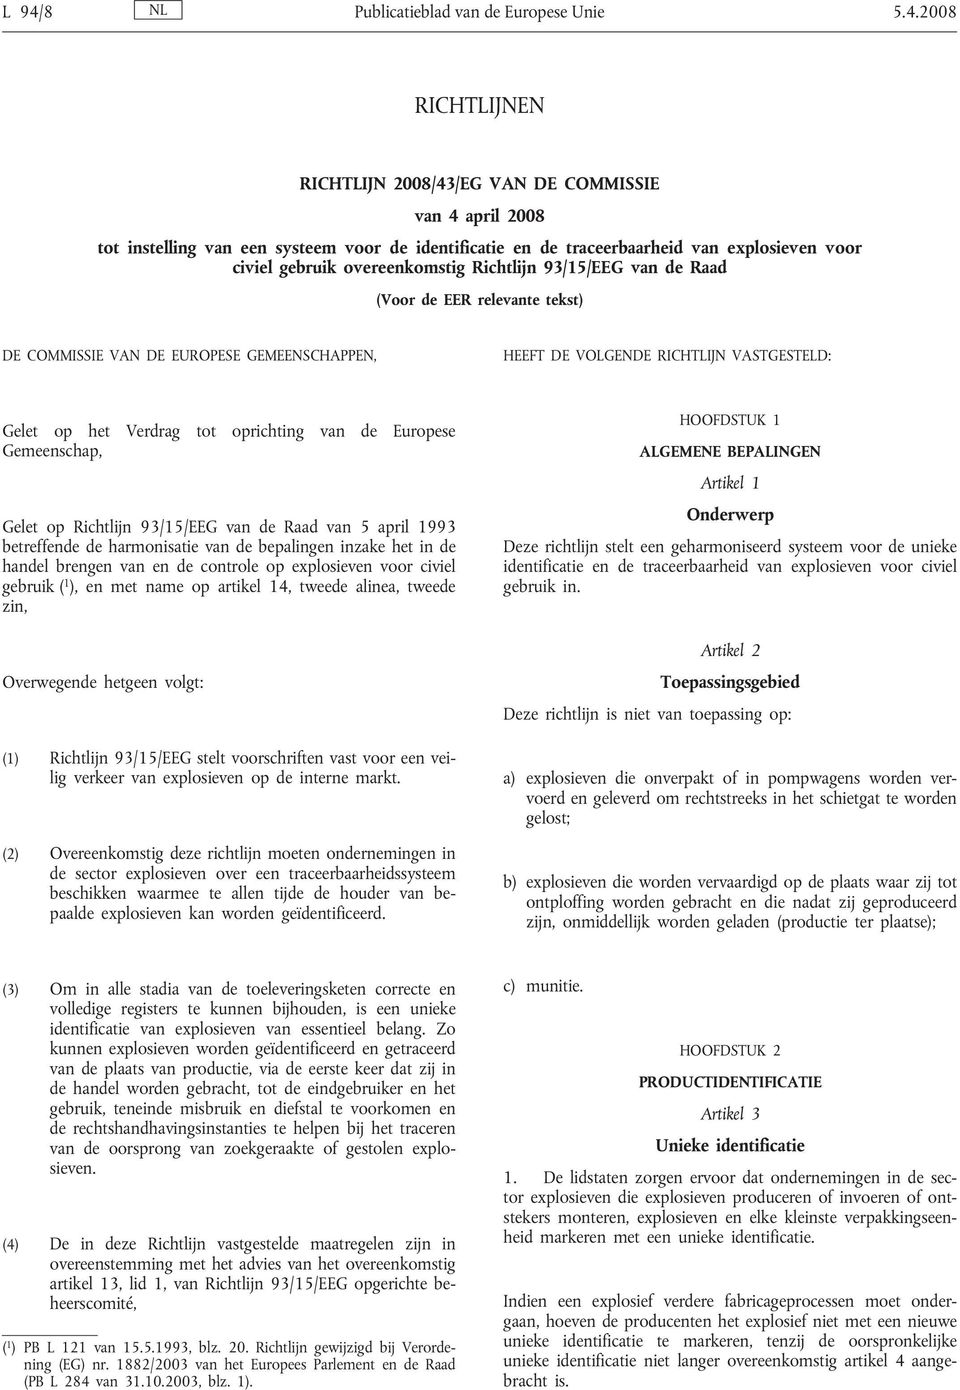 Gelet op het Verdrag tot oprichting van de Europese Gemeenschap, Gelet op Richtlijn 93/15/EEG van de Raad van 5 april 1993 betreffende de harmonisatie van de bepalingen inzake het in de handel